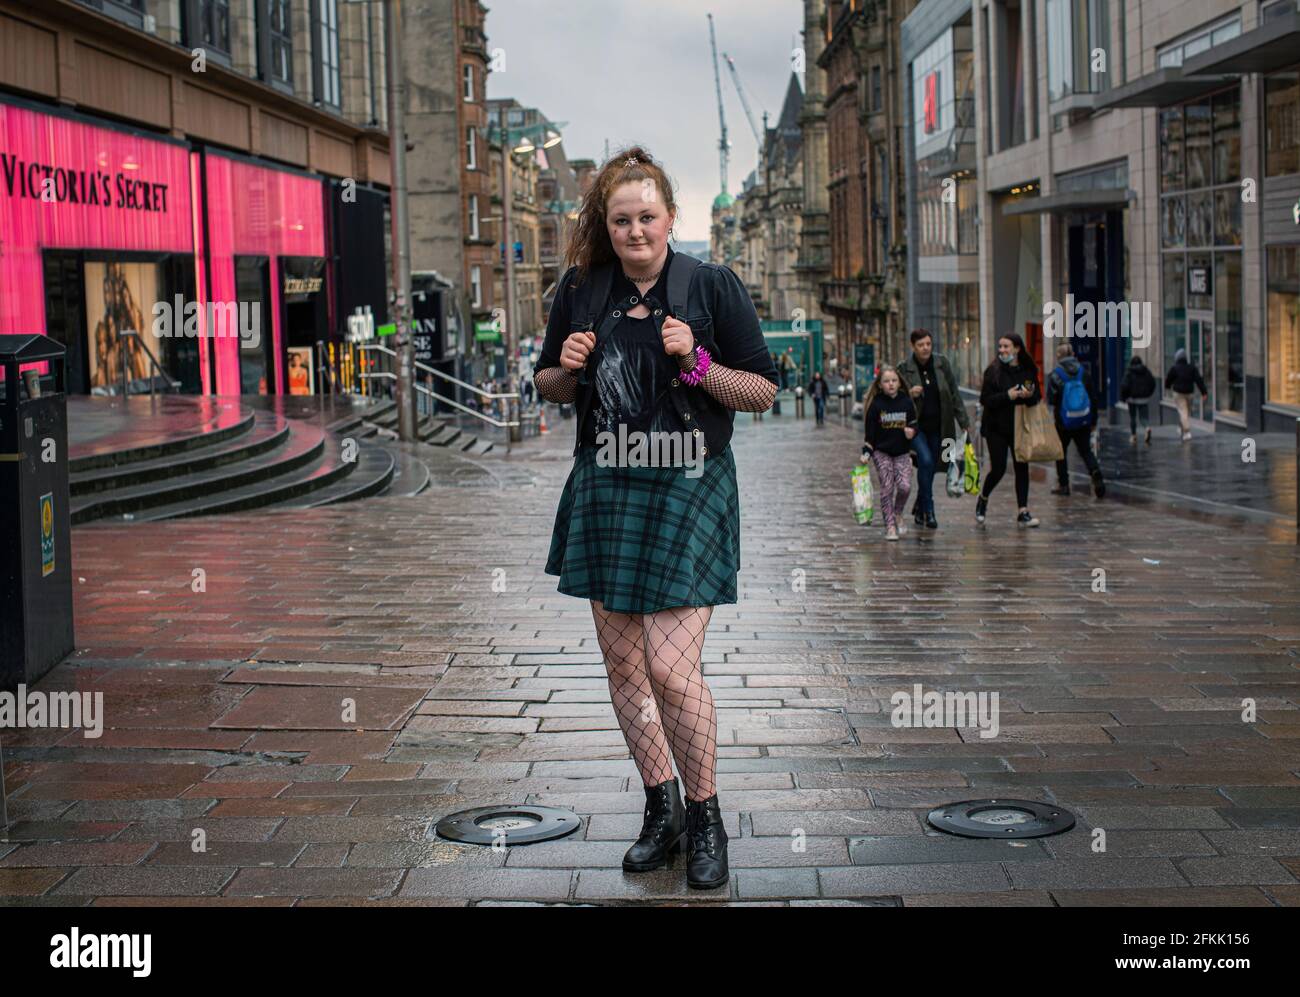 Potrait di giovane donna che indossa una gonna di tartan e calze a rete in una via vuota dello shopping in Buchan Street nel centro di Glasgow, Scozia, Regno Unito Foto Stock